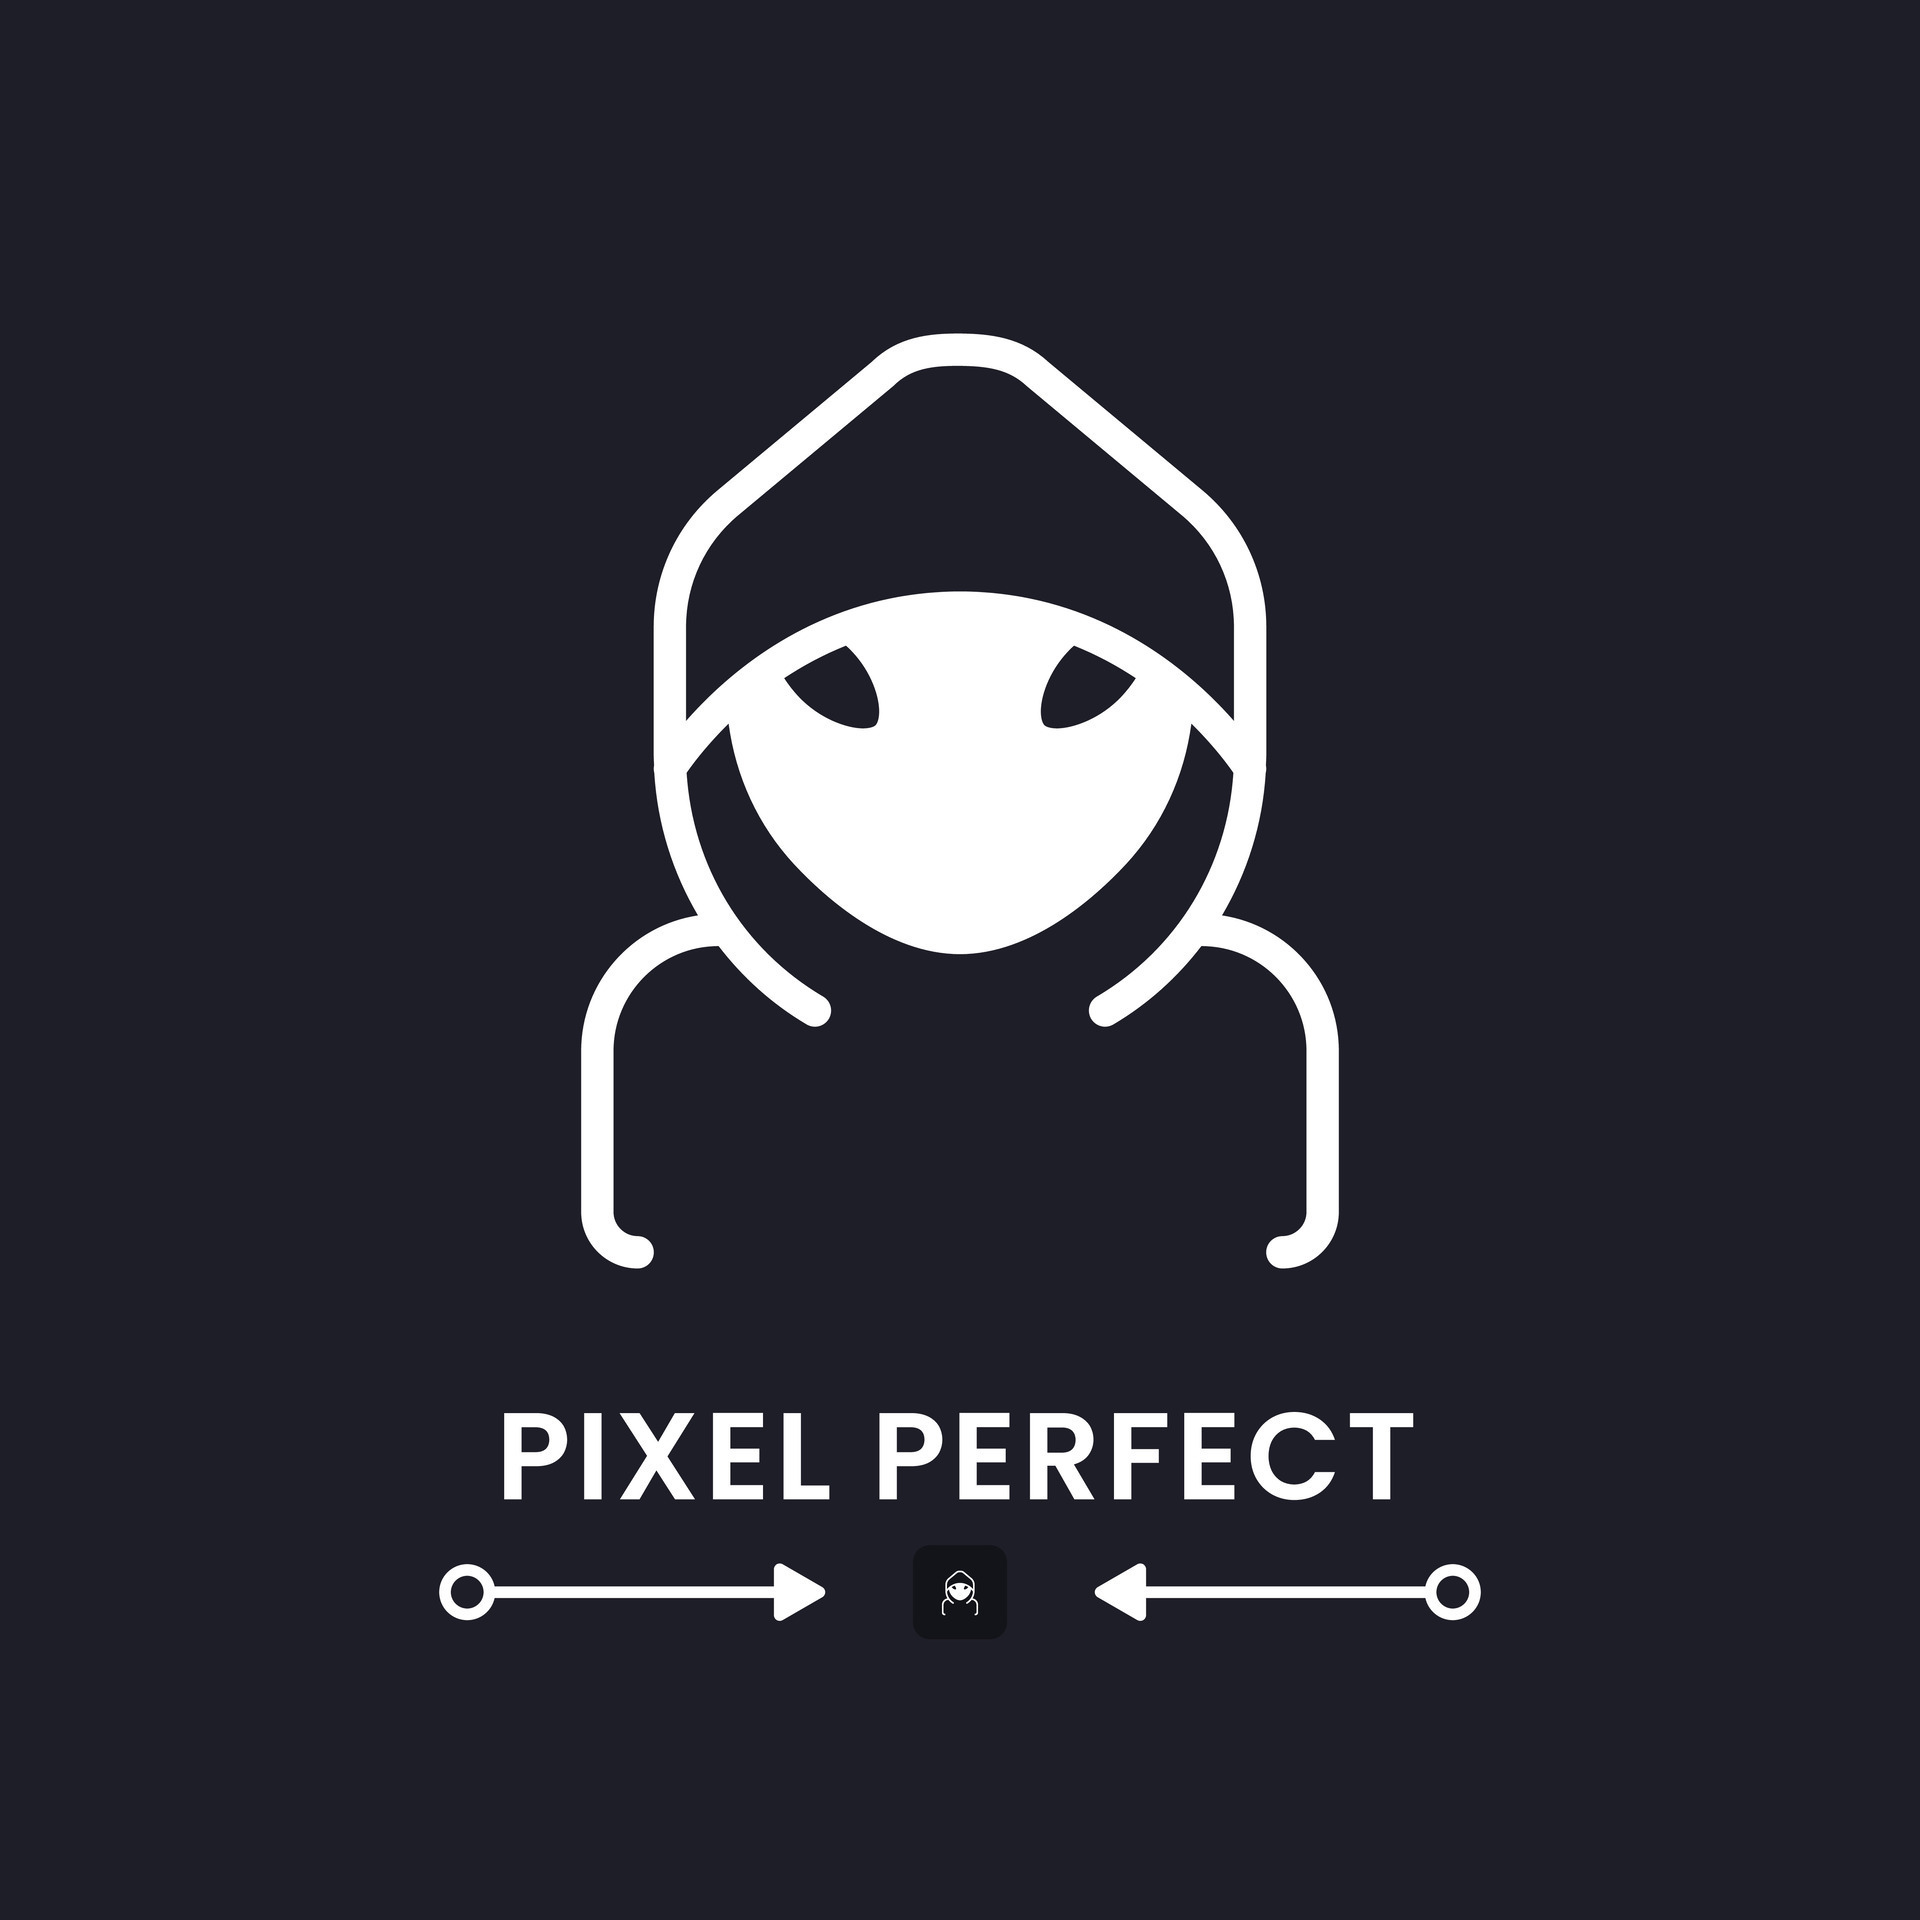 Pixel Art Discord Logo Hack Week 2019, Pixel Shadow. - discordhack post -  Imgur